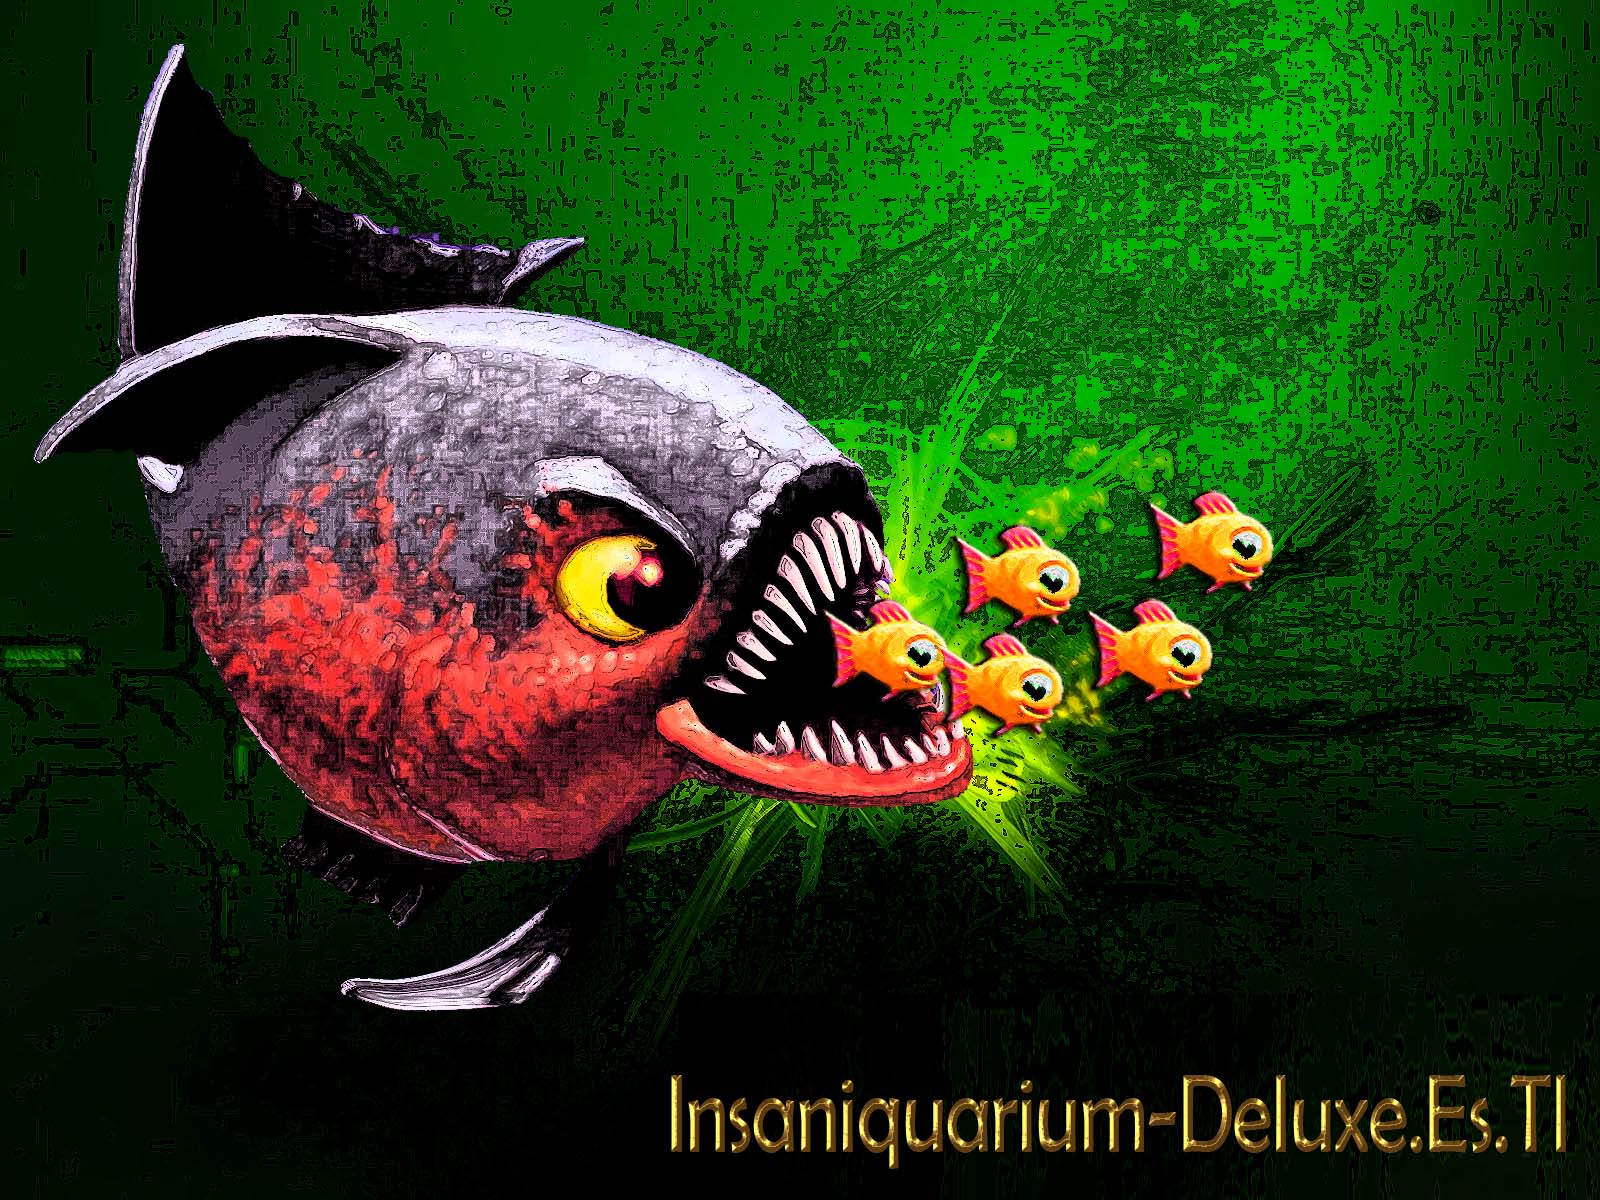 insaniquarium deluxe free download full version no-trial